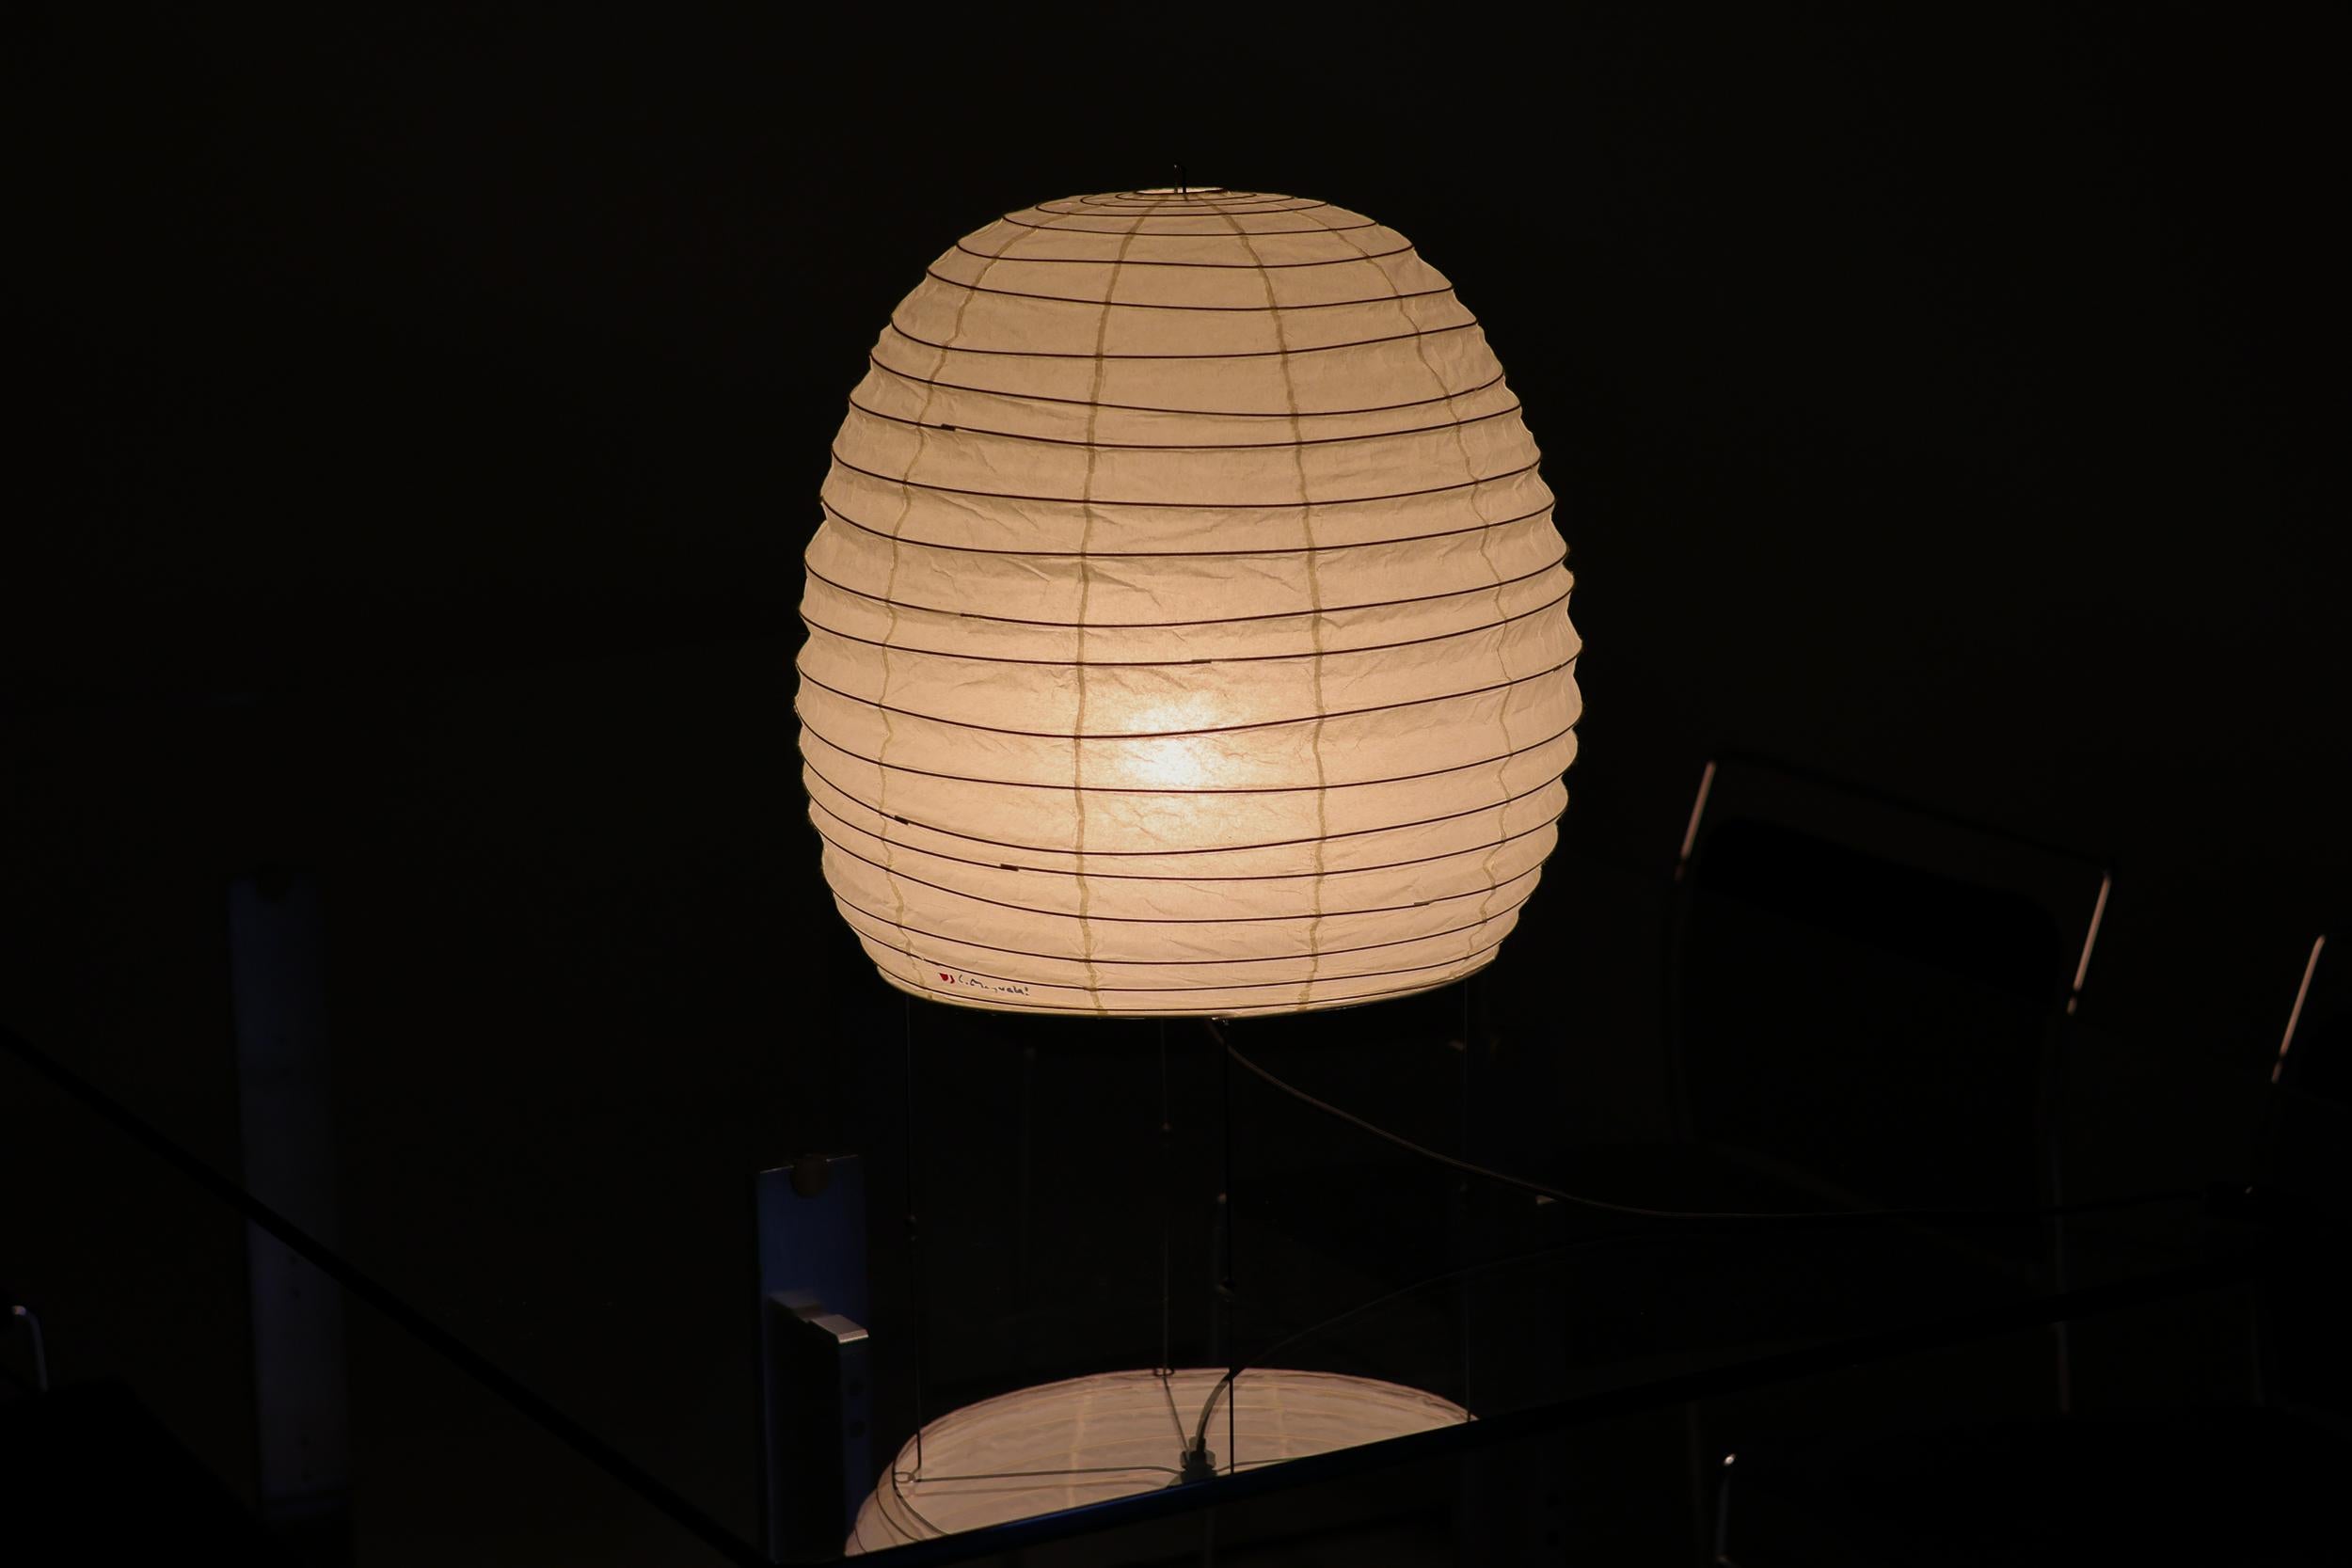 Numéro de modèle 20N lampe de table ou lampadaire par Isamu Noguchi pour Akari. 
Version originale fabriquée par Ozeki & co au Japon. 
Papier de riz, métal émaillé. Le fabricant a conservé le cachet d'origine, la boîte d'origine est